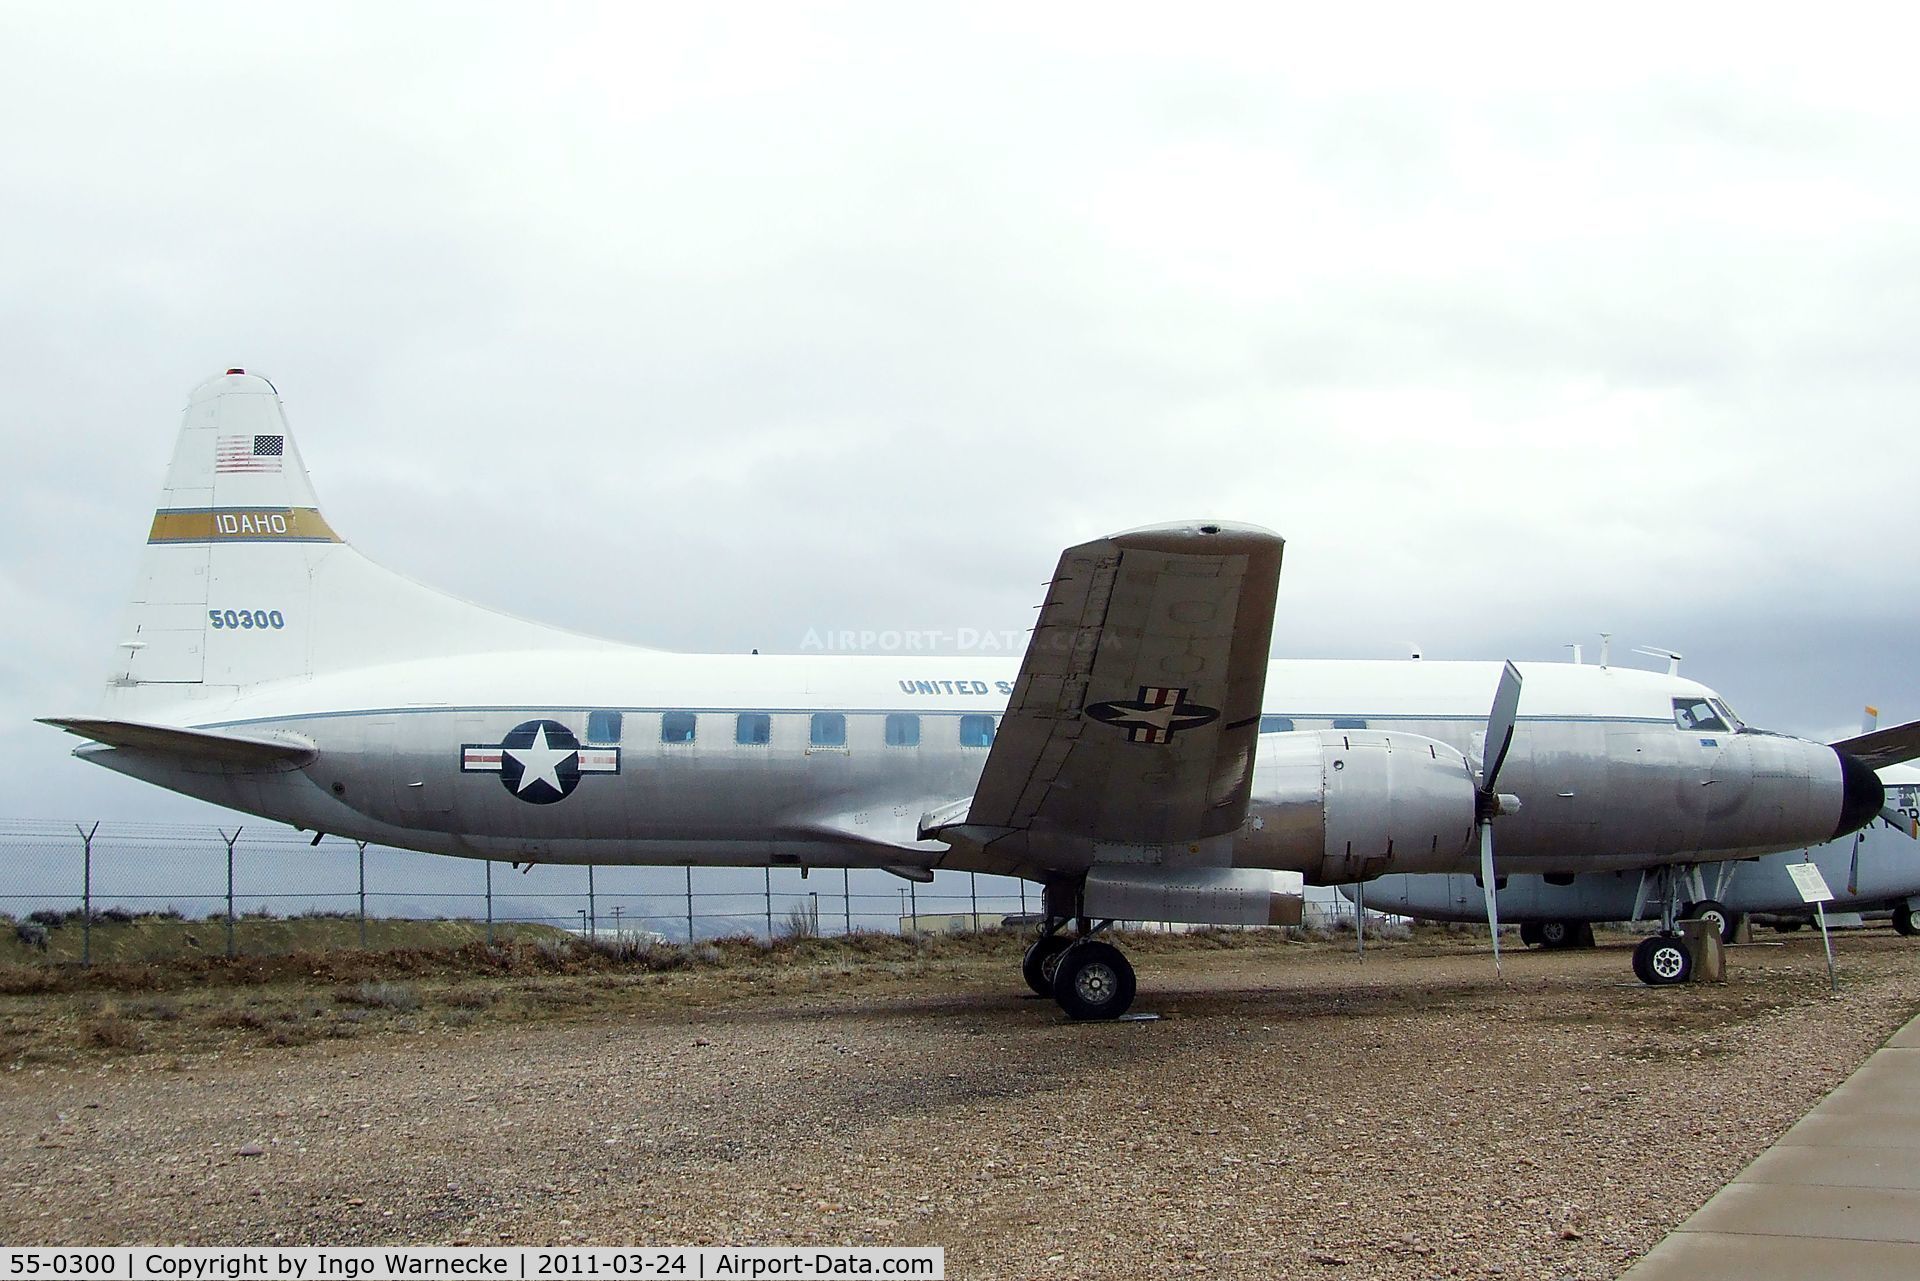 55-0300, 1955 Convair C-131D Samaritan C/N 233, Convair C-131D Samaritan at the Hill Aerospace Museum, Roy UT